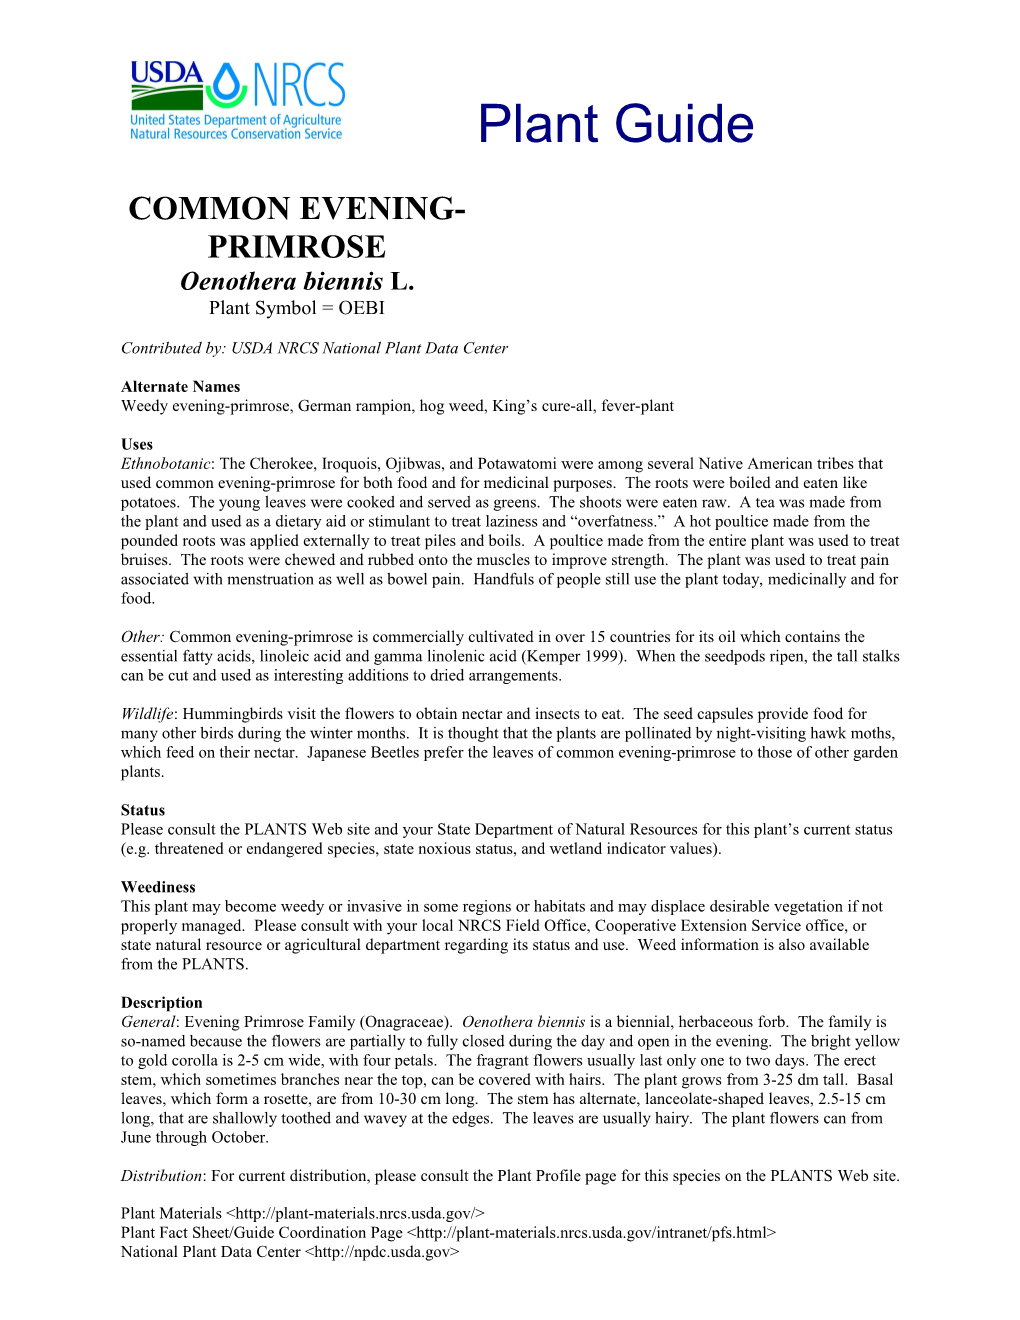 Common Evening-Primrose